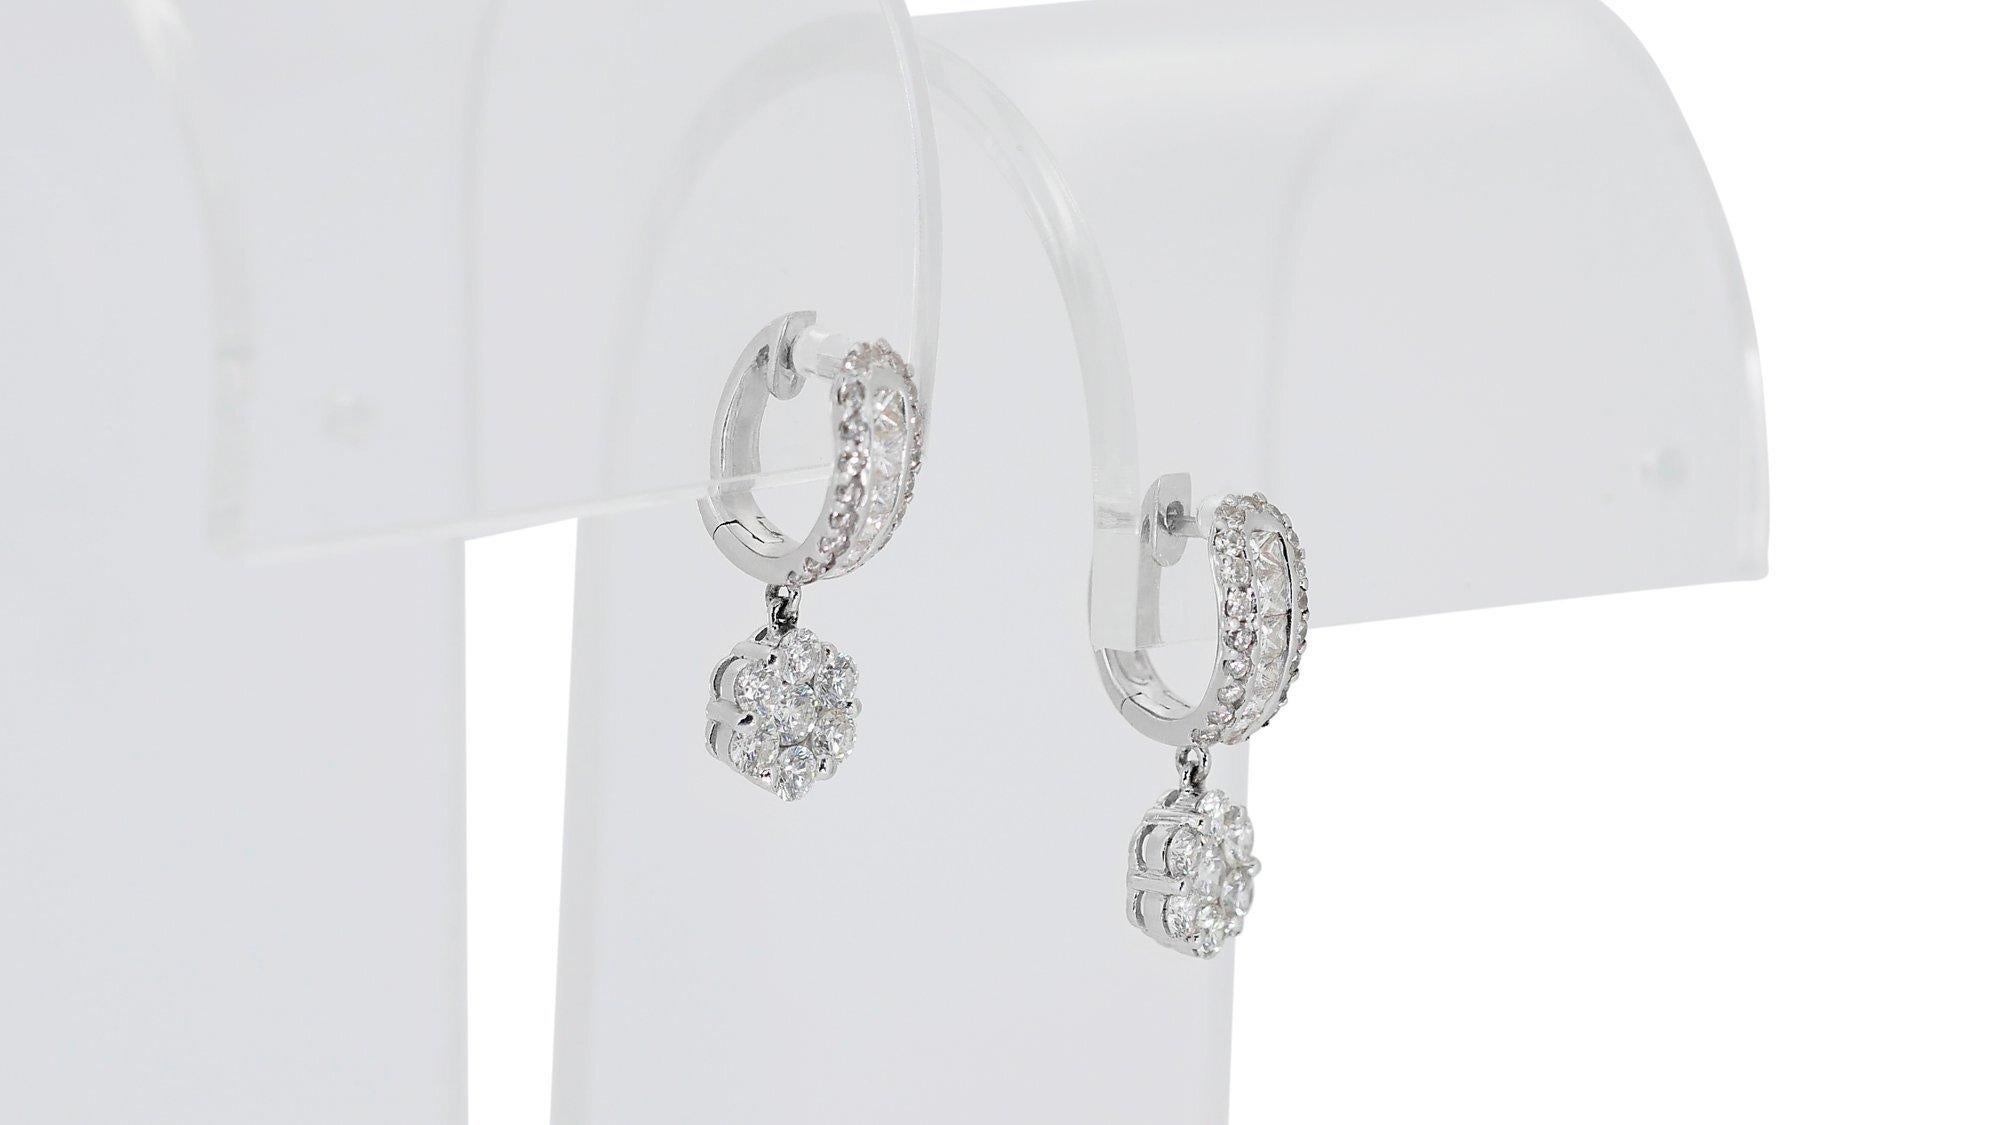 Elegant 18 kt. White Gold Earrings with 2.10 ct Natural Diamonds - IGI Cert 2